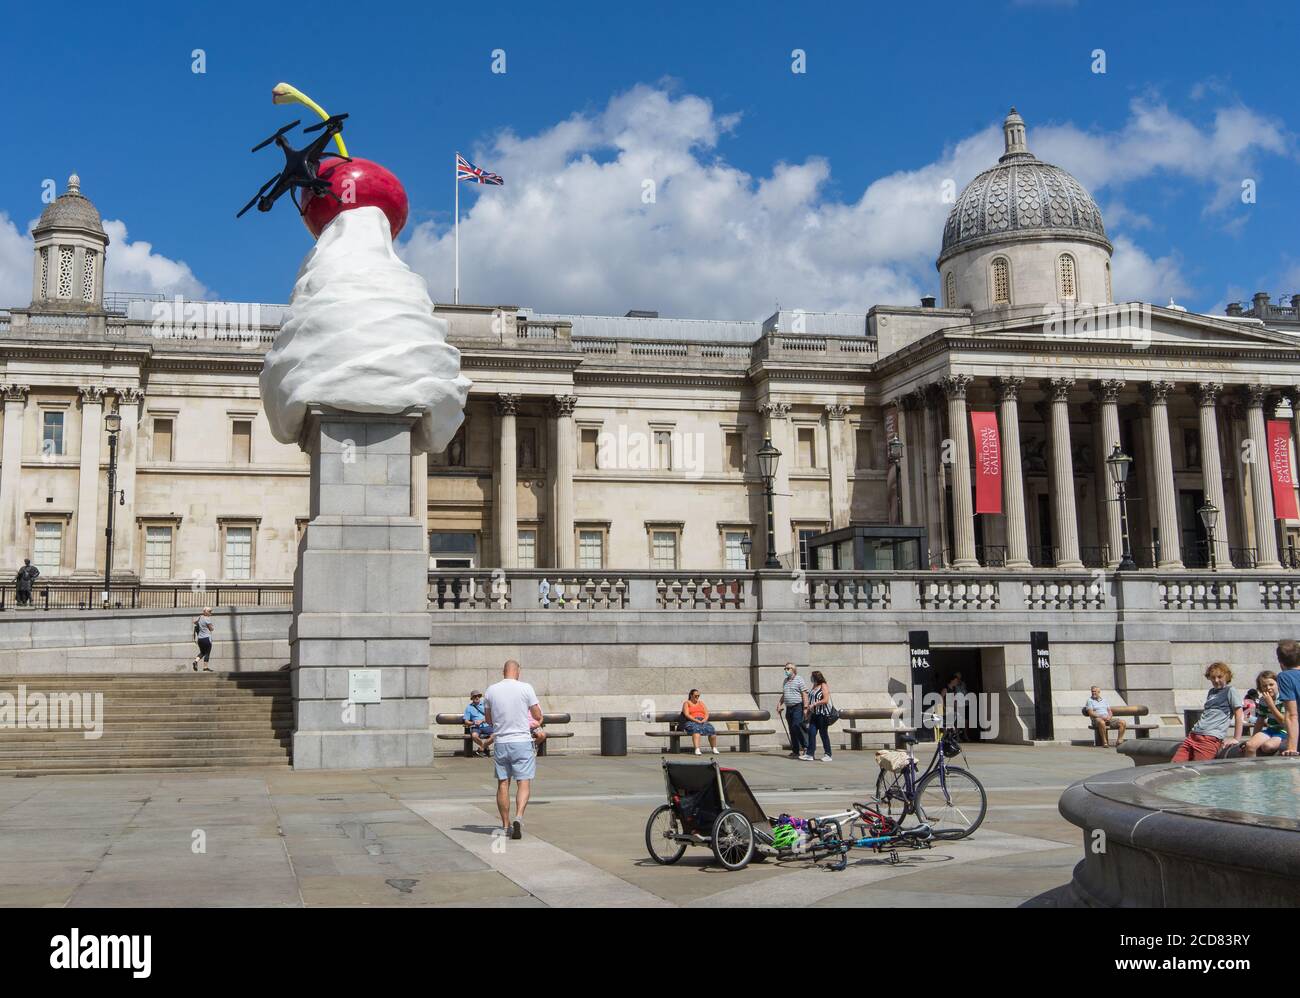 La sculpture d'extrémité sur la quatrième plinthe de Trafalgar Square. Crème fouettée, une mouche et un drone sur une cerise. Vue grand angle. Londres Banque D'Images